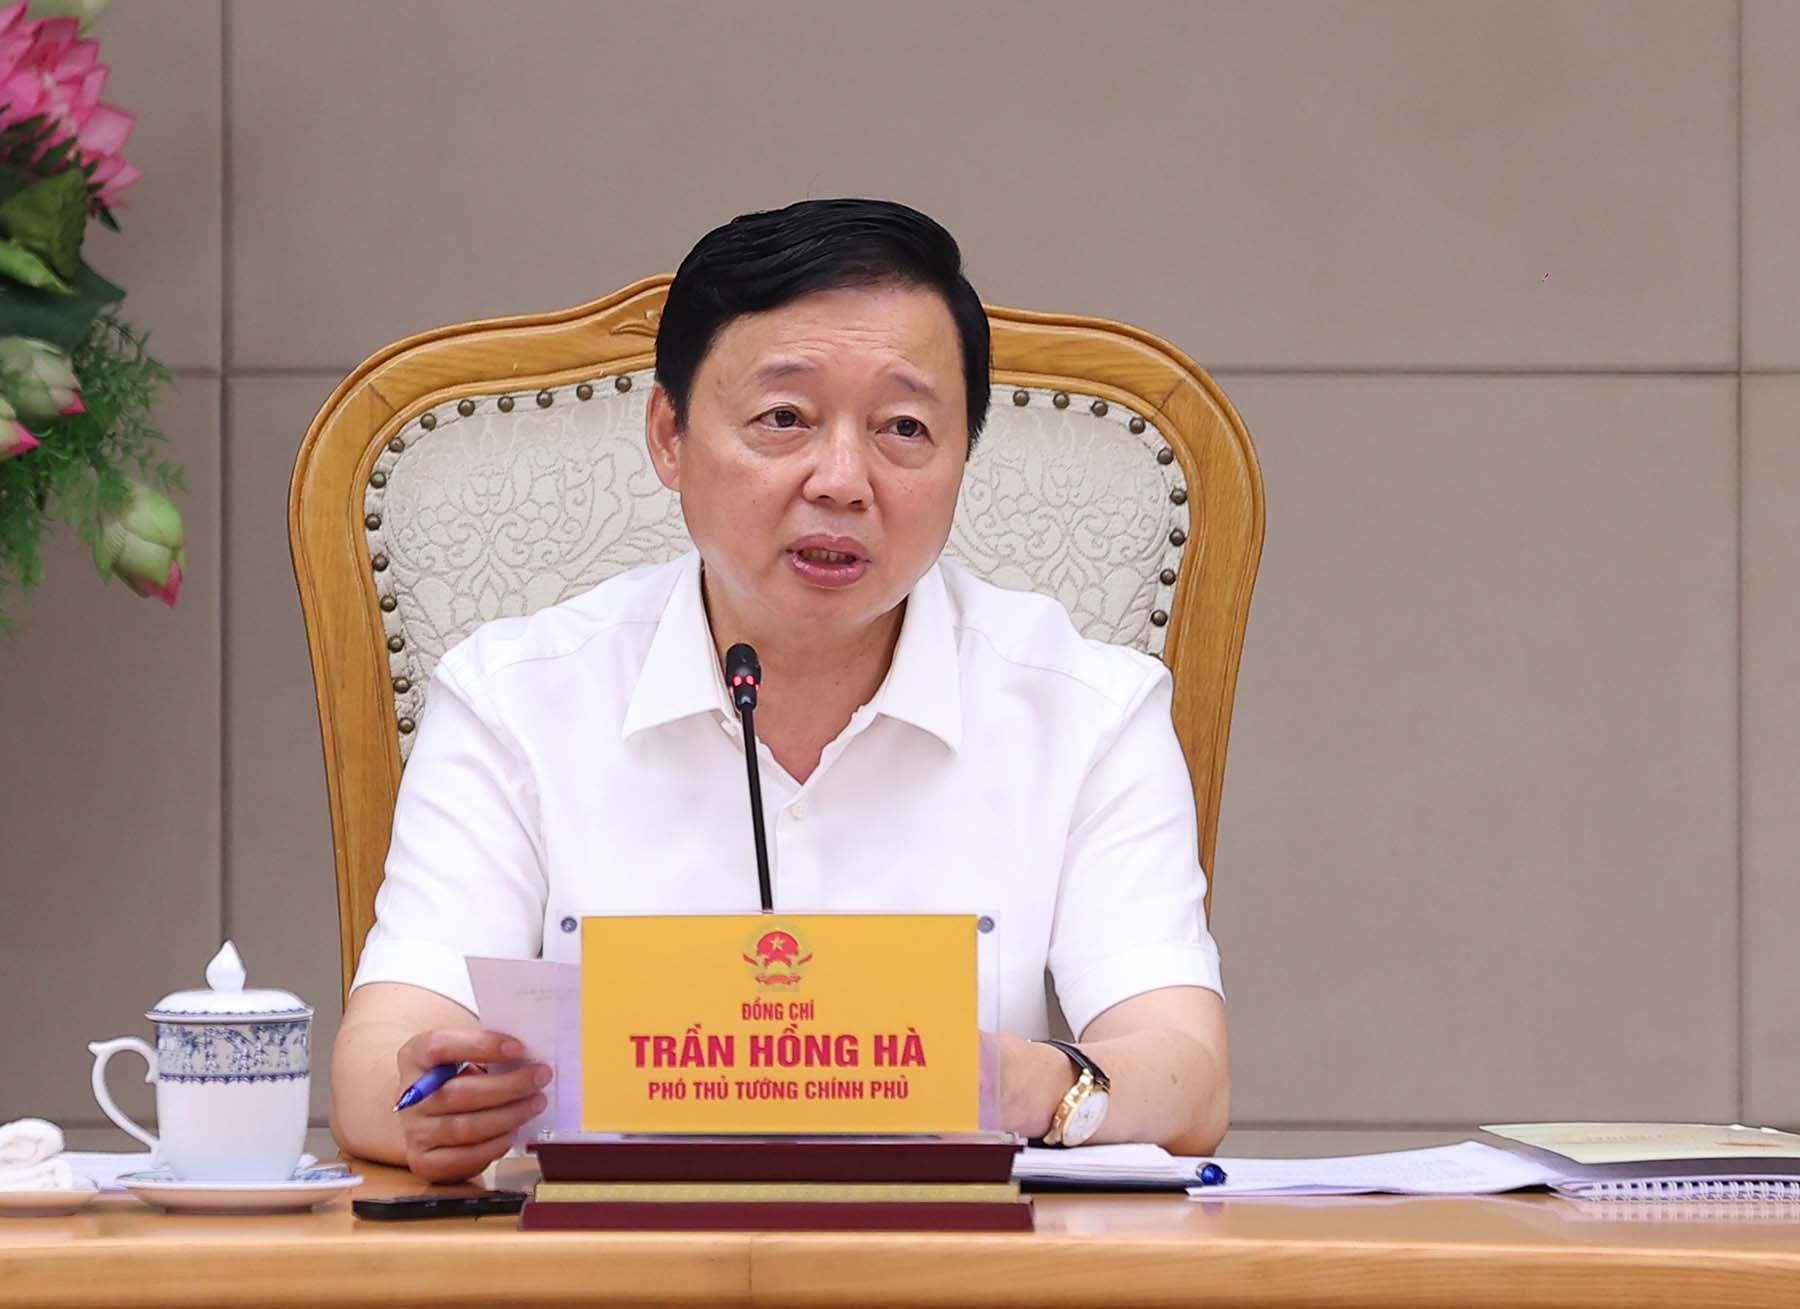 Phó Thủ tướng Chính phủ Trần Hồng Hà phát biểu tại cuộc họp. Ảnh: VPCP